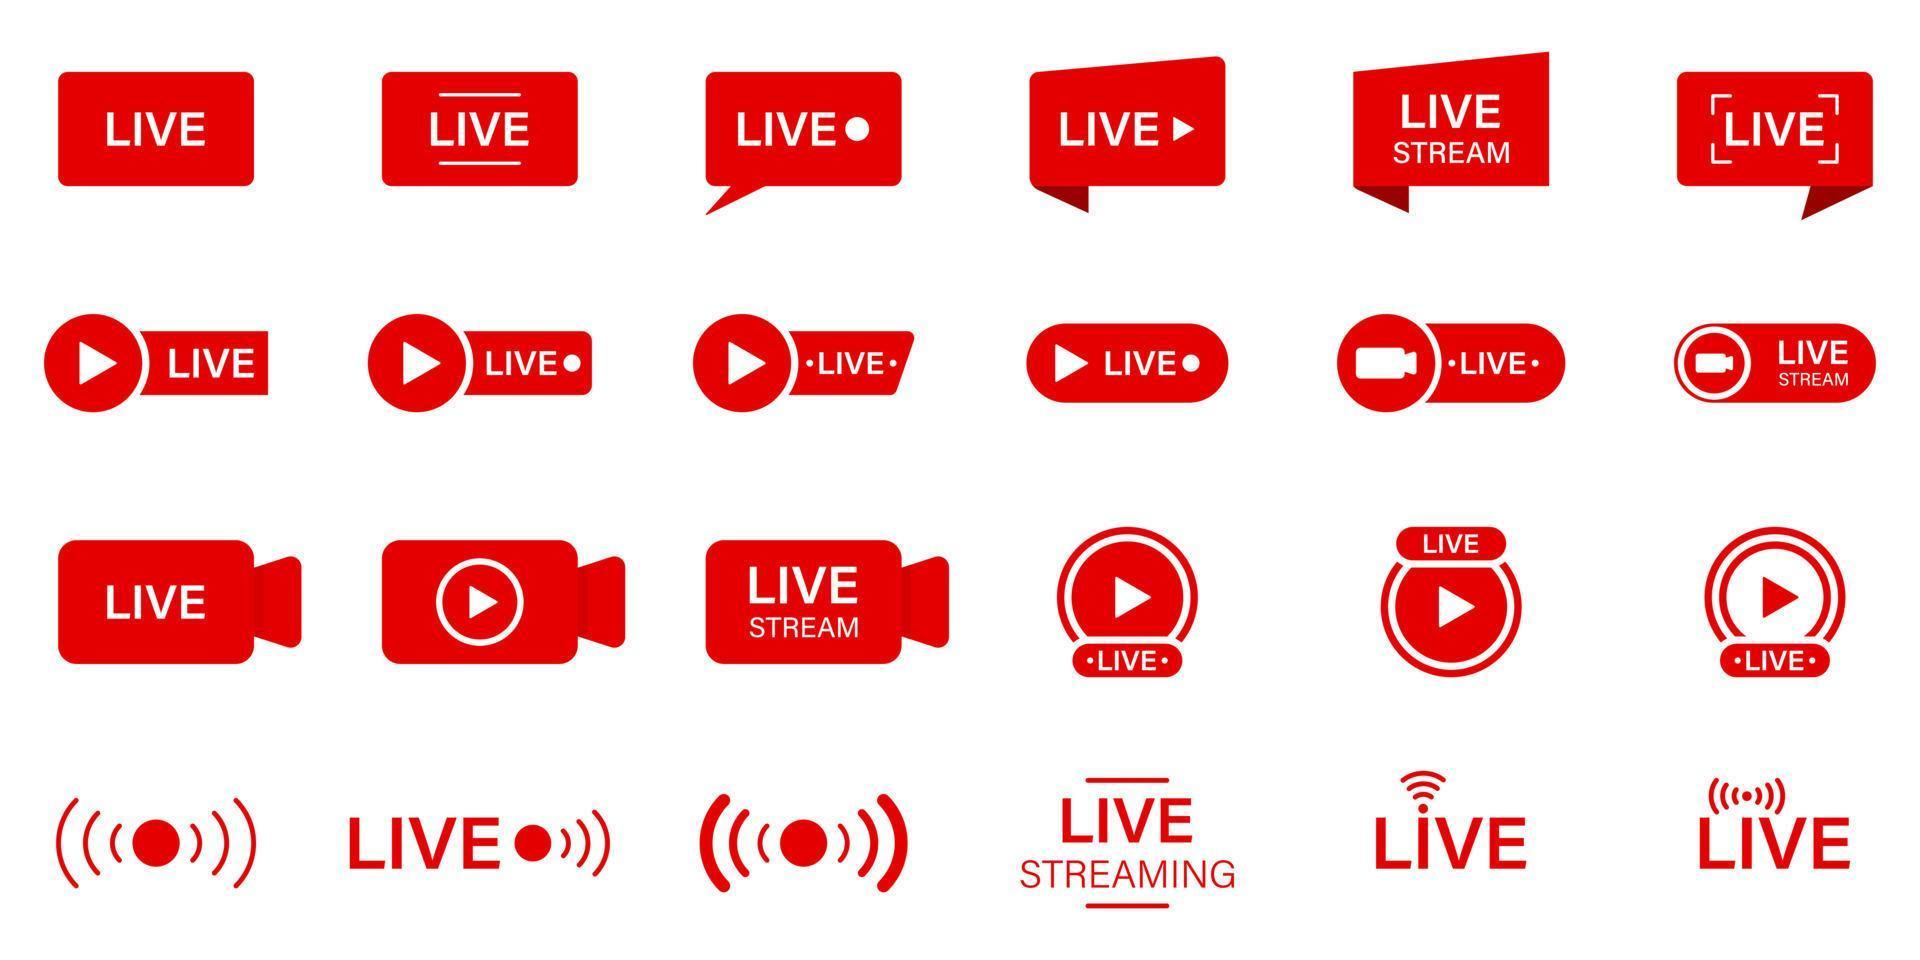 Live-Stream-Zeichensatz. Online-Nachrichten, Show, Fernsehsender. Live-Stream-Liniensymbol. Piktogramm für Online-Broadcast-Schaltflächen. rotes Symbol für Livestream. isolierte Vektorillustration. vektor